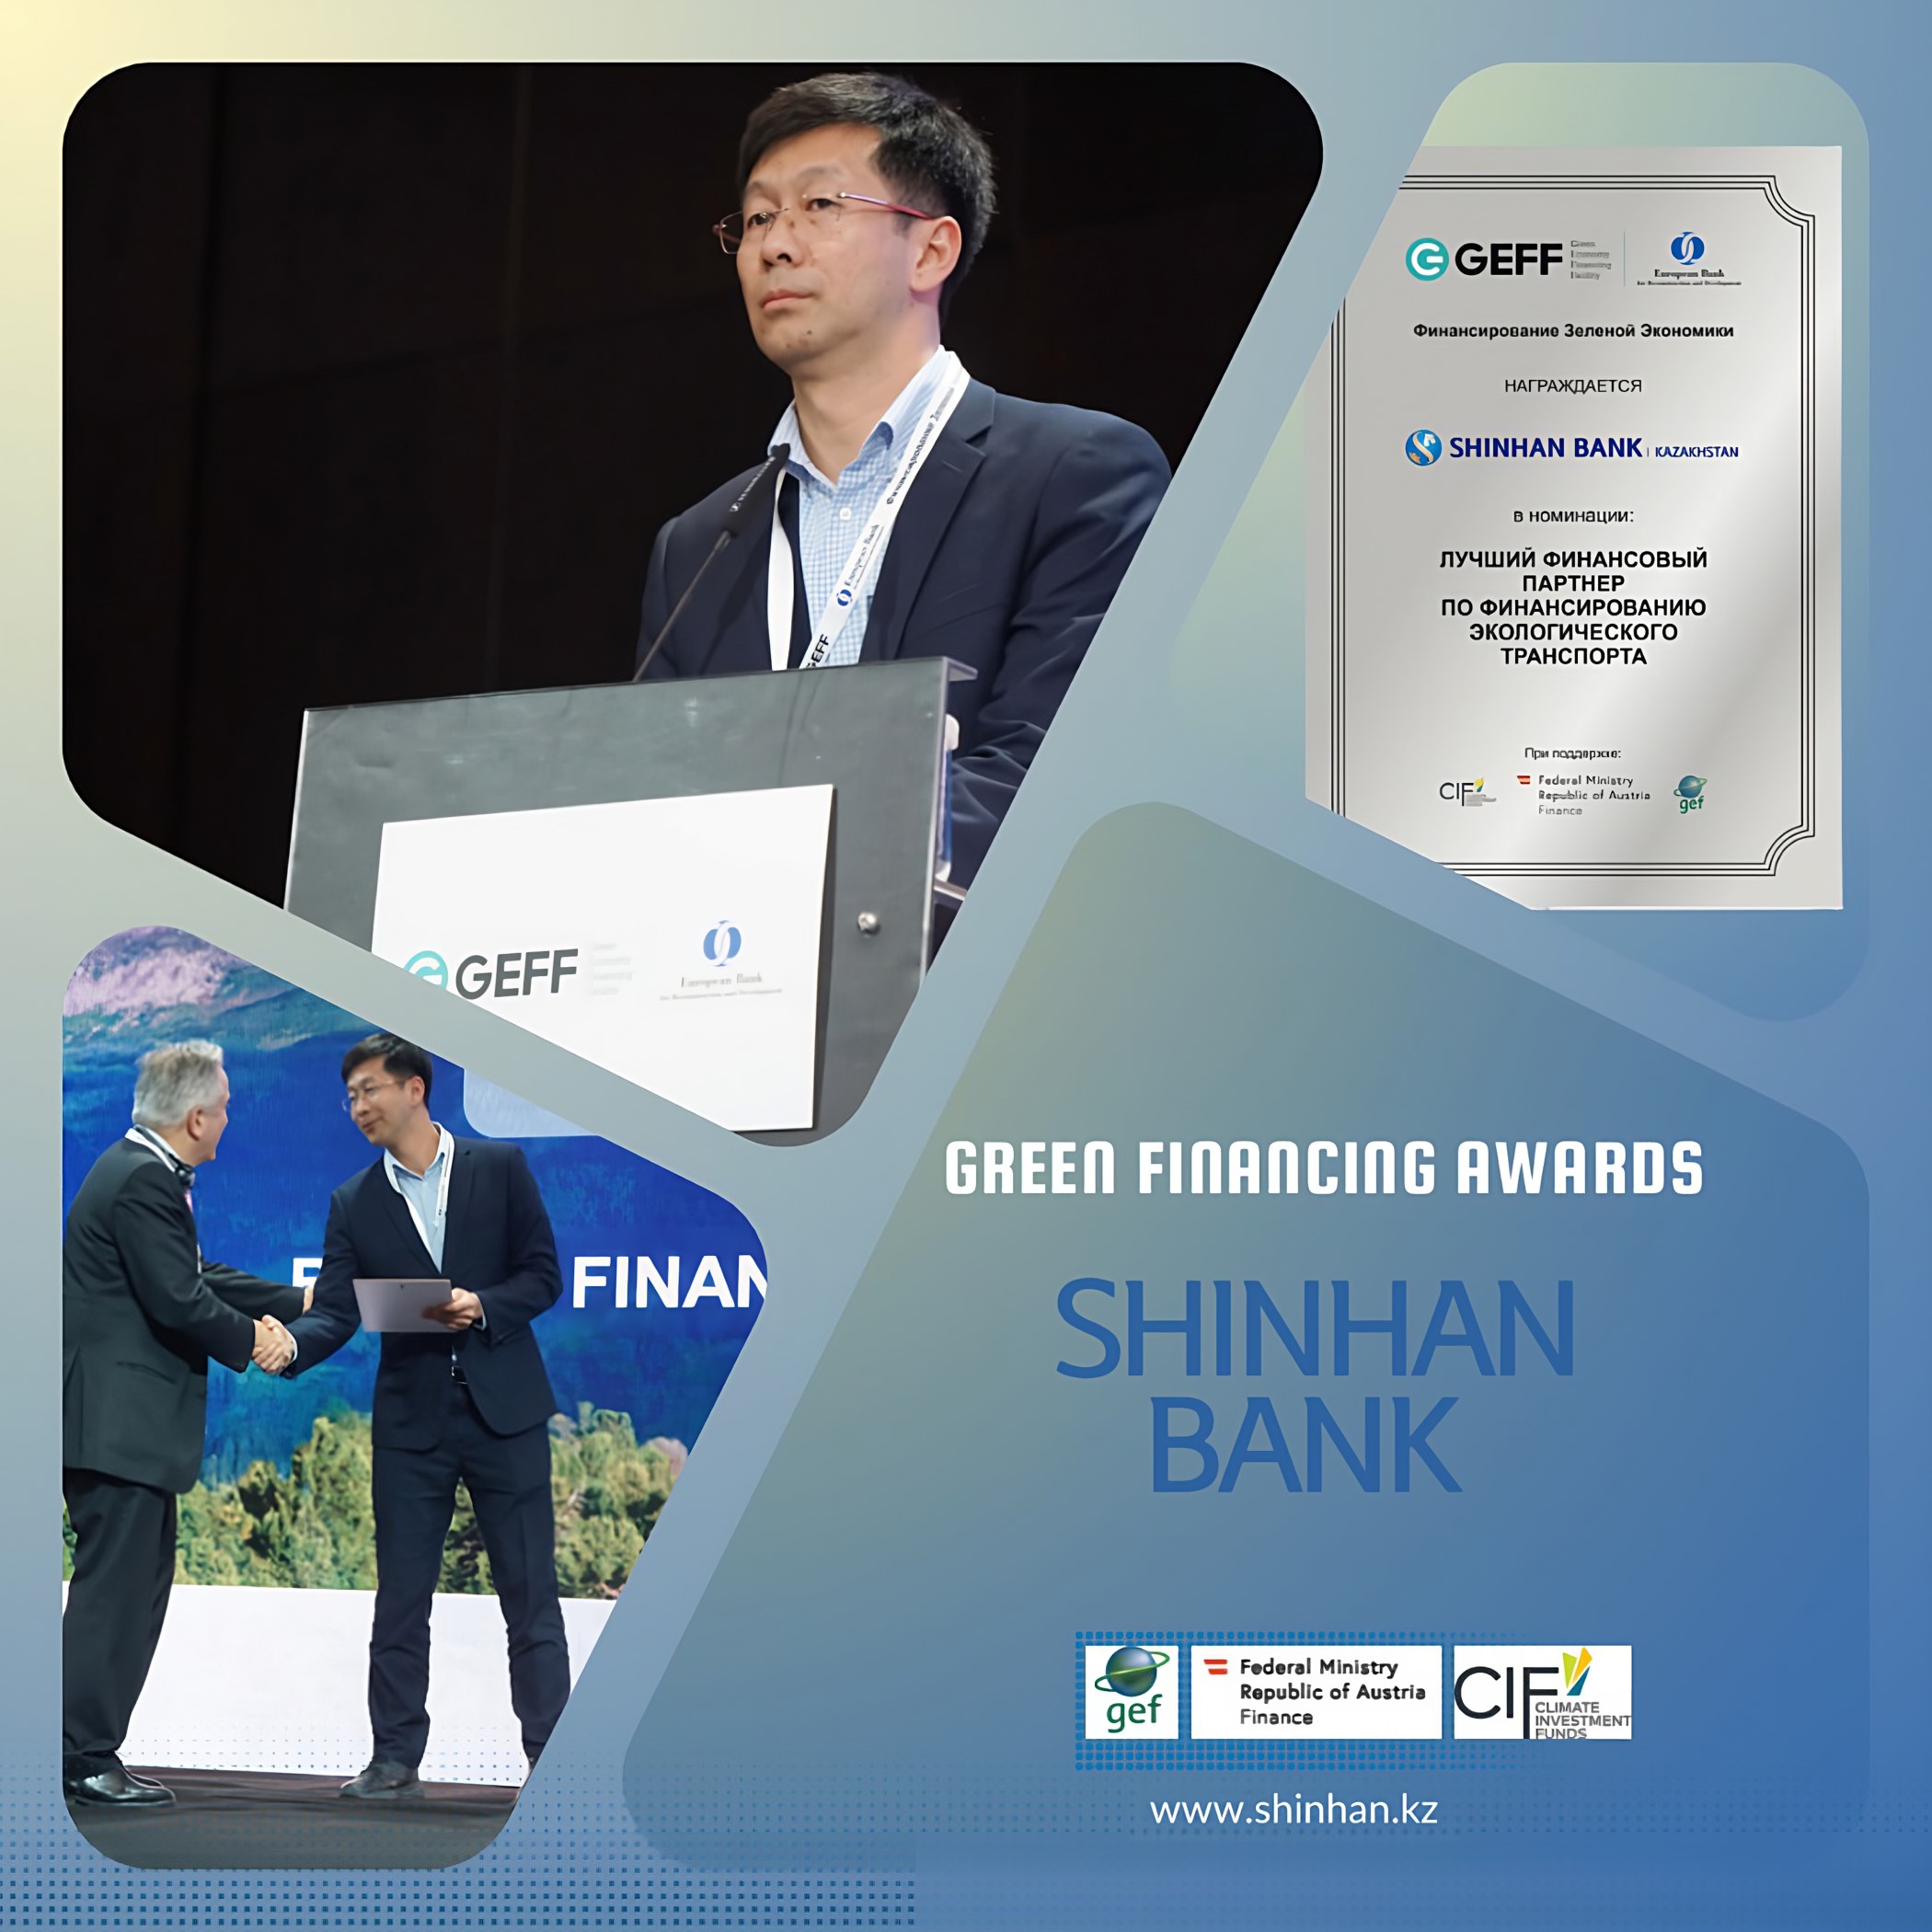 Шинхан Банк Казахстан получил награду в номинации «Лучший финансовый партнер по финансированию экологического транспорта»